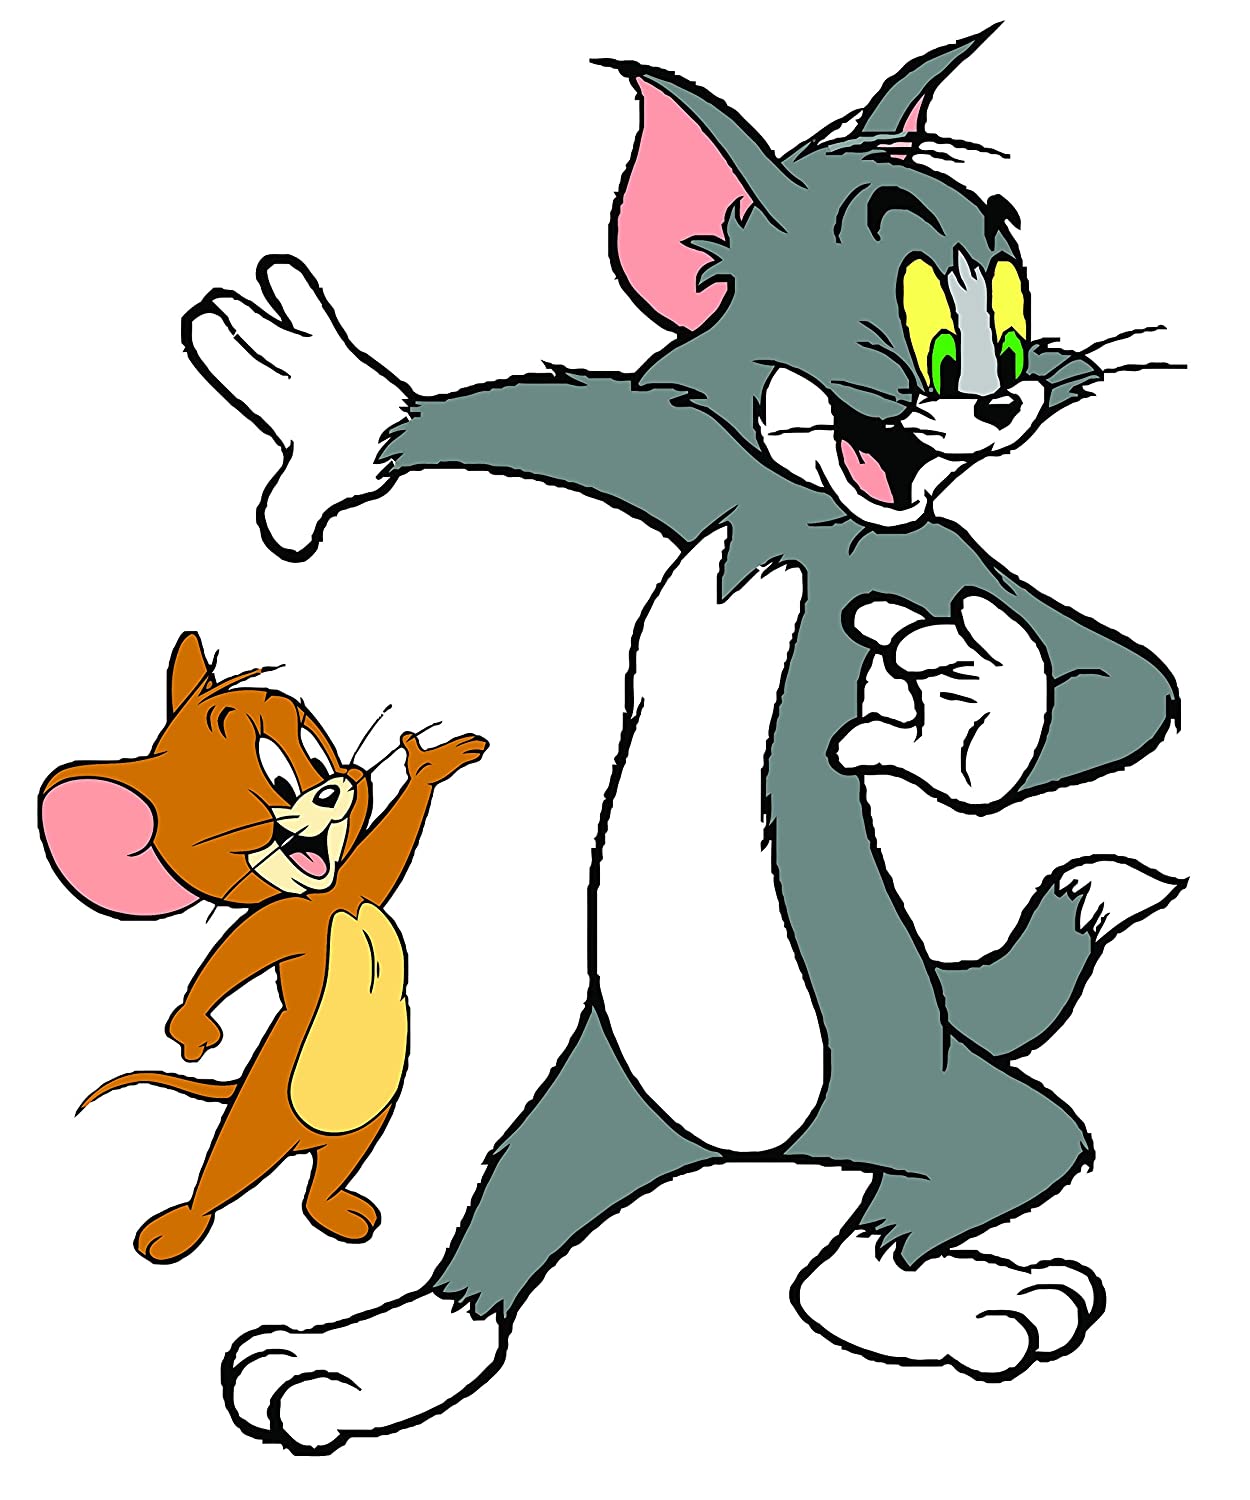 Hình Ảnh Jerry, Hình Ảnh Tom And Jerry Ngộ Nghĩnh, Đáng Yêu Nhất